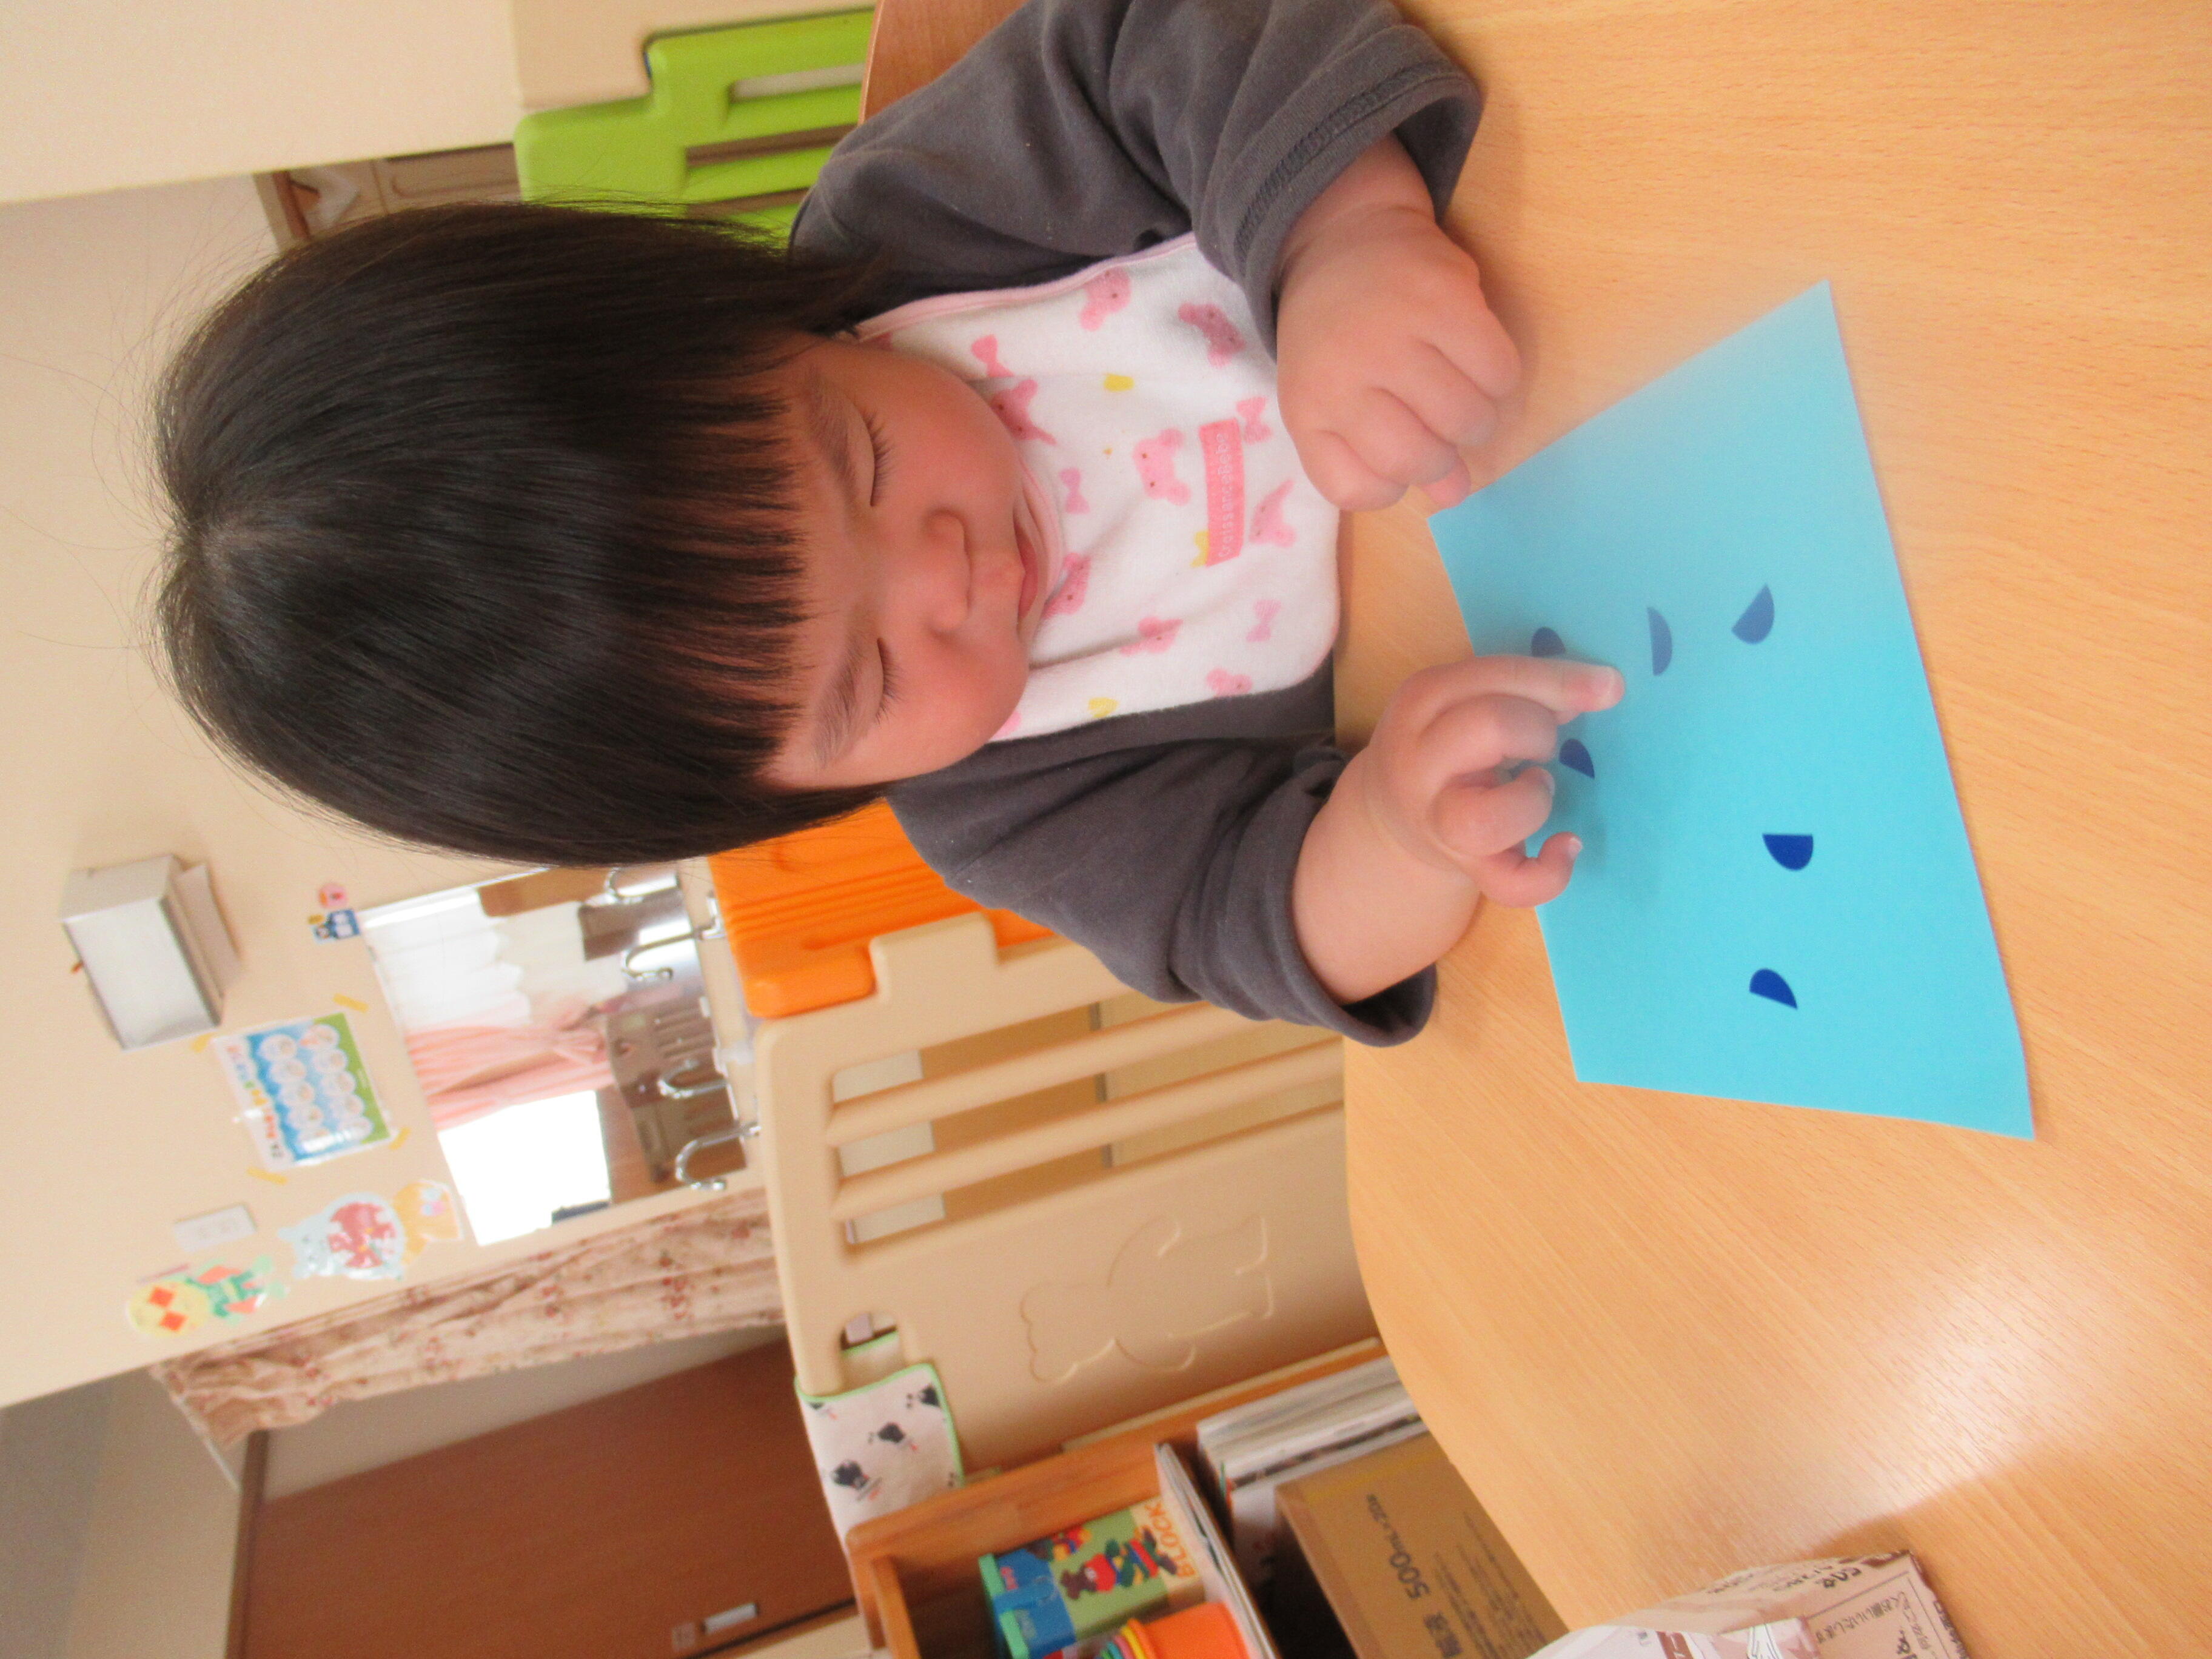 １歳児さんはシールを折り紙に貼りました。苦戦しながらも一人で貼っていました。